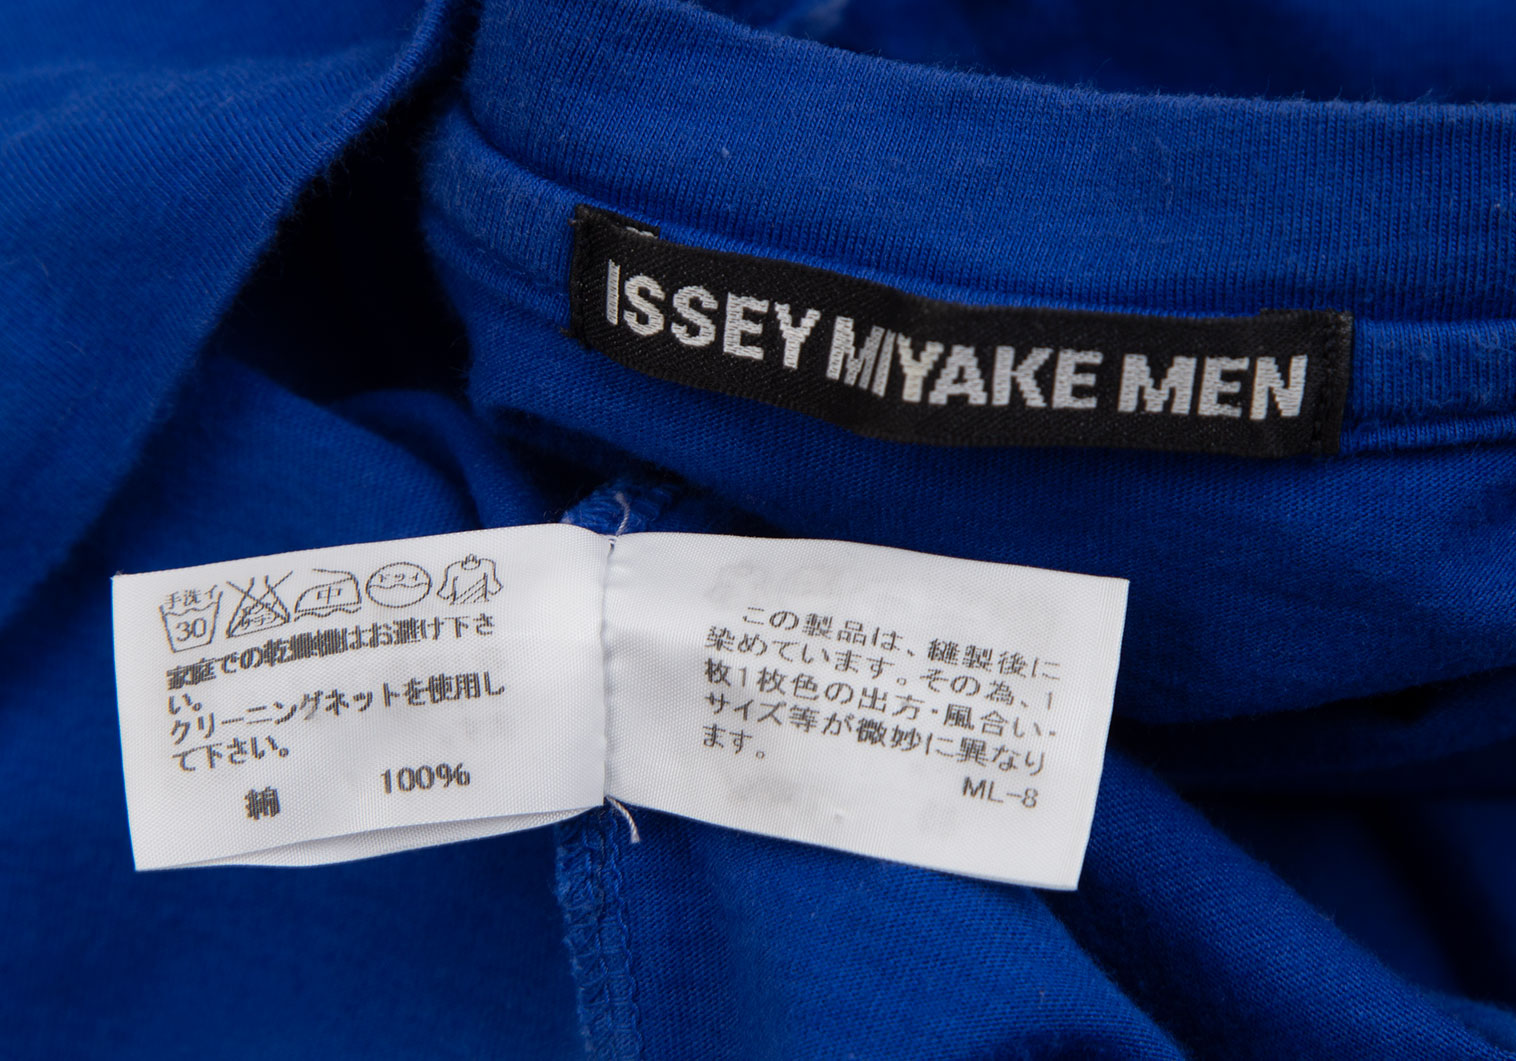 イッセイミヤケ メンISSEY MIYAKE MEN 板締め絞り染めラインTシャツ 青4